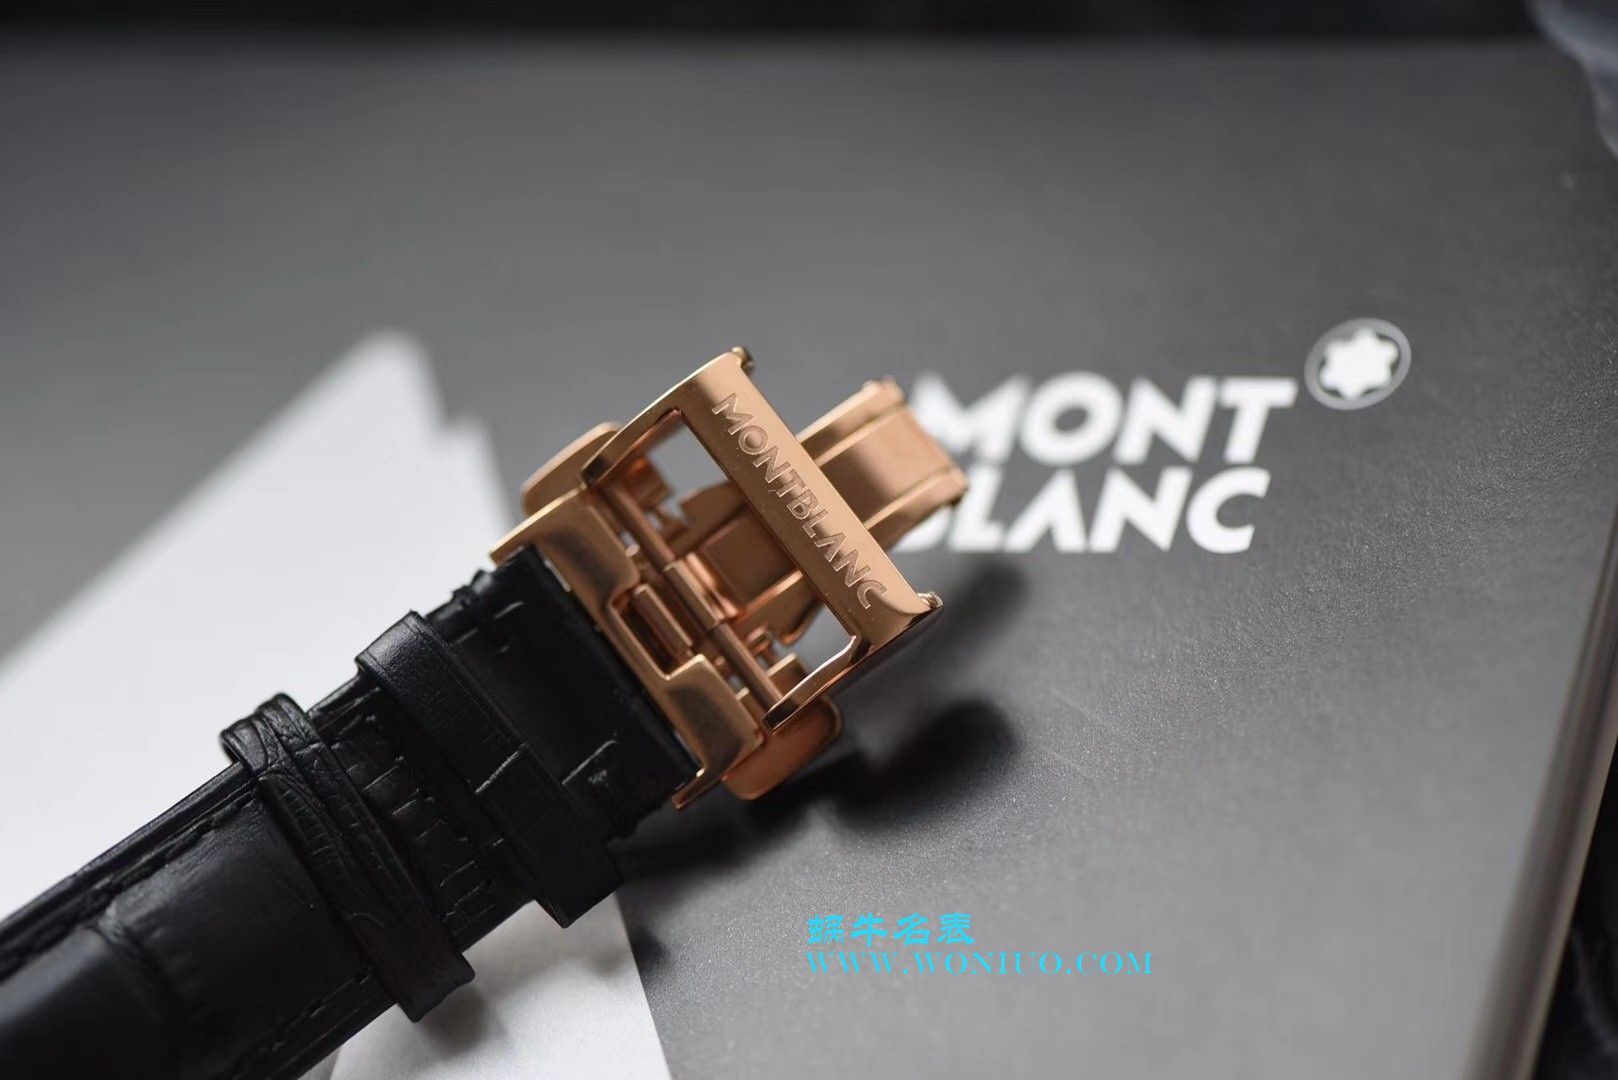 【VF厂一比一超A高仿手表】万宝龙MONTBLANC明星系列U0116508腕表 / MB006